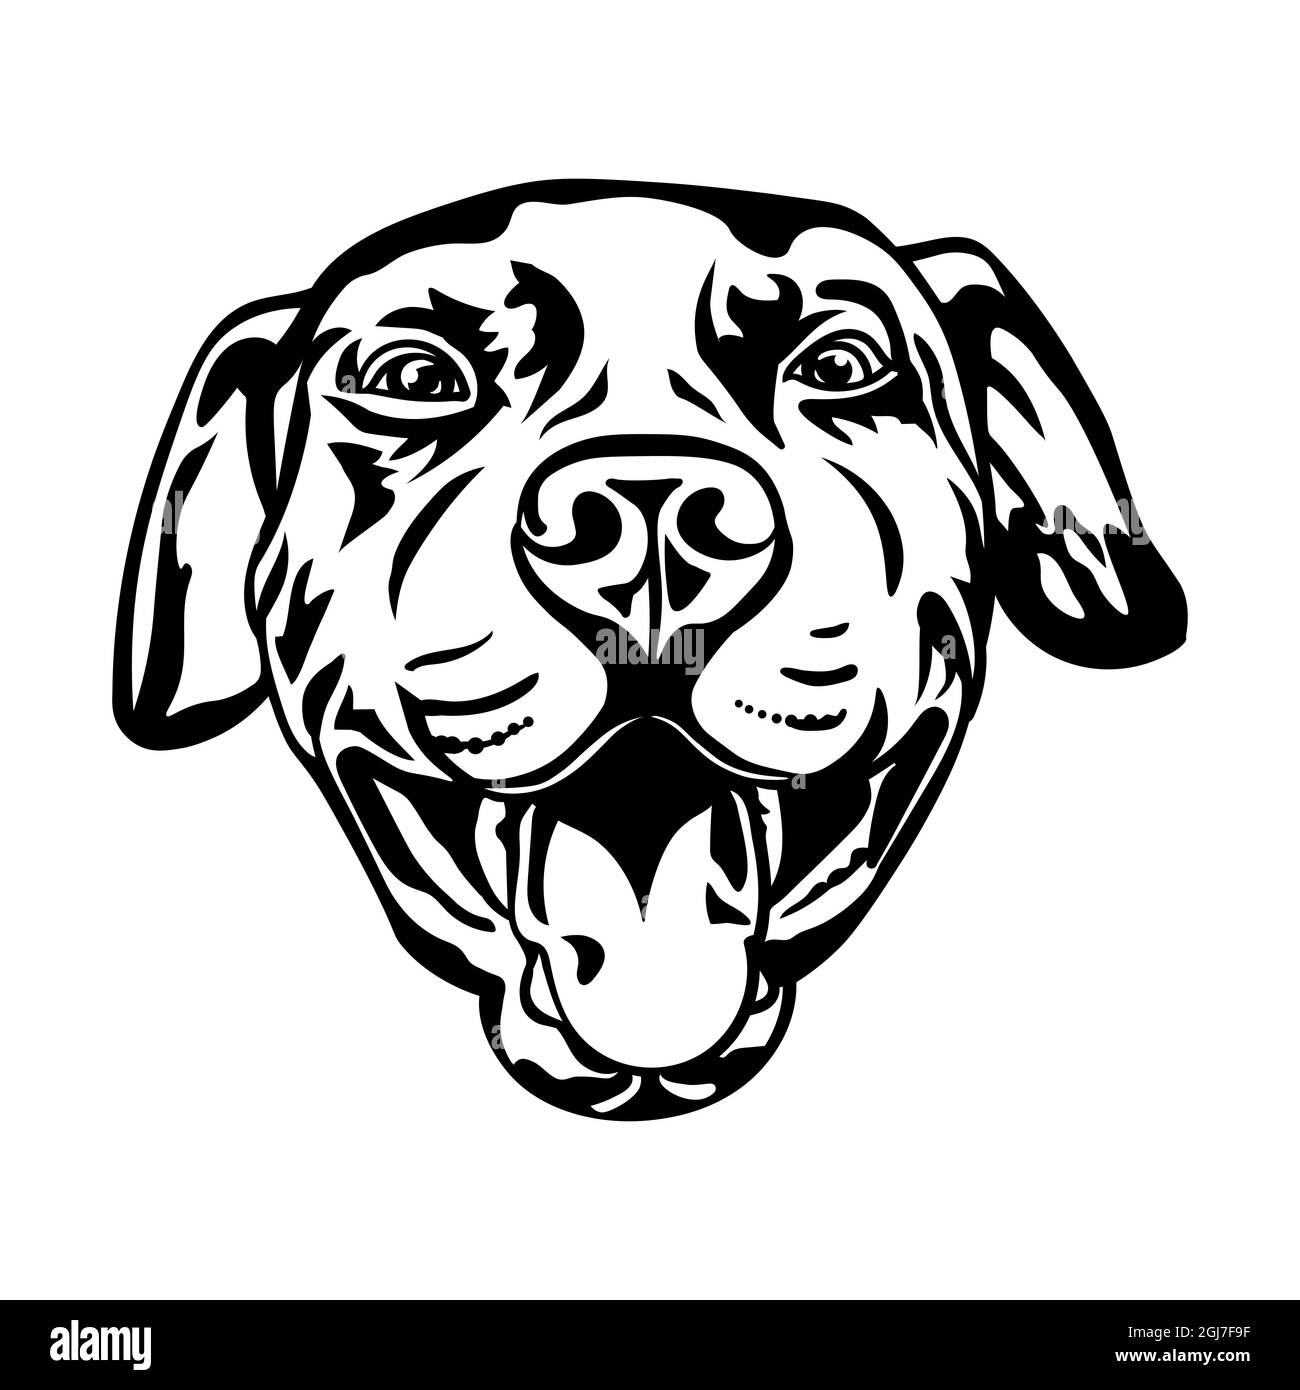 Pitbull Dog, dessin de silhouette noire, illustration vectorielle. Illustration de Vecteur